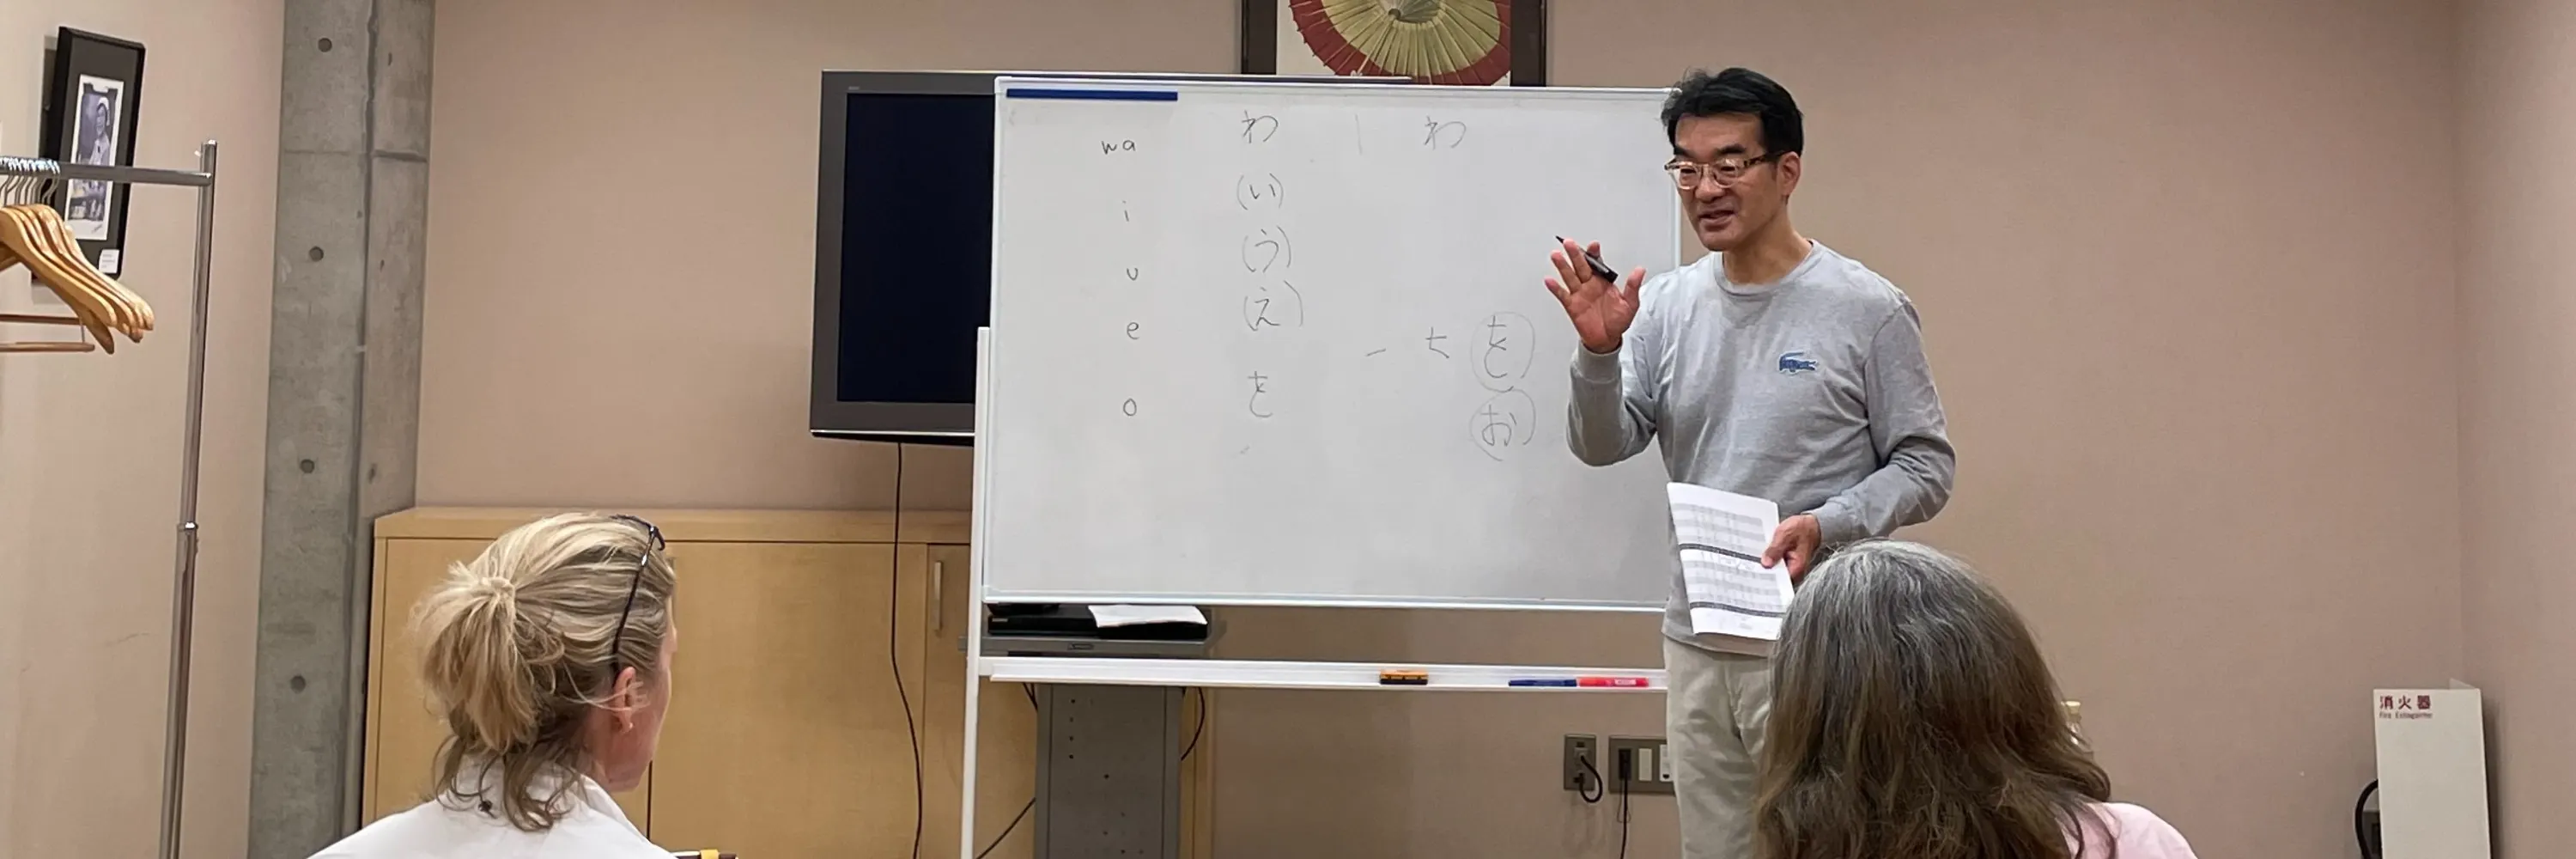 ประสบการณ์การเรียนภาษาญี่ปุ่นเชิงปฏิบัติและทัวร์ - Klook ประเทศไทย